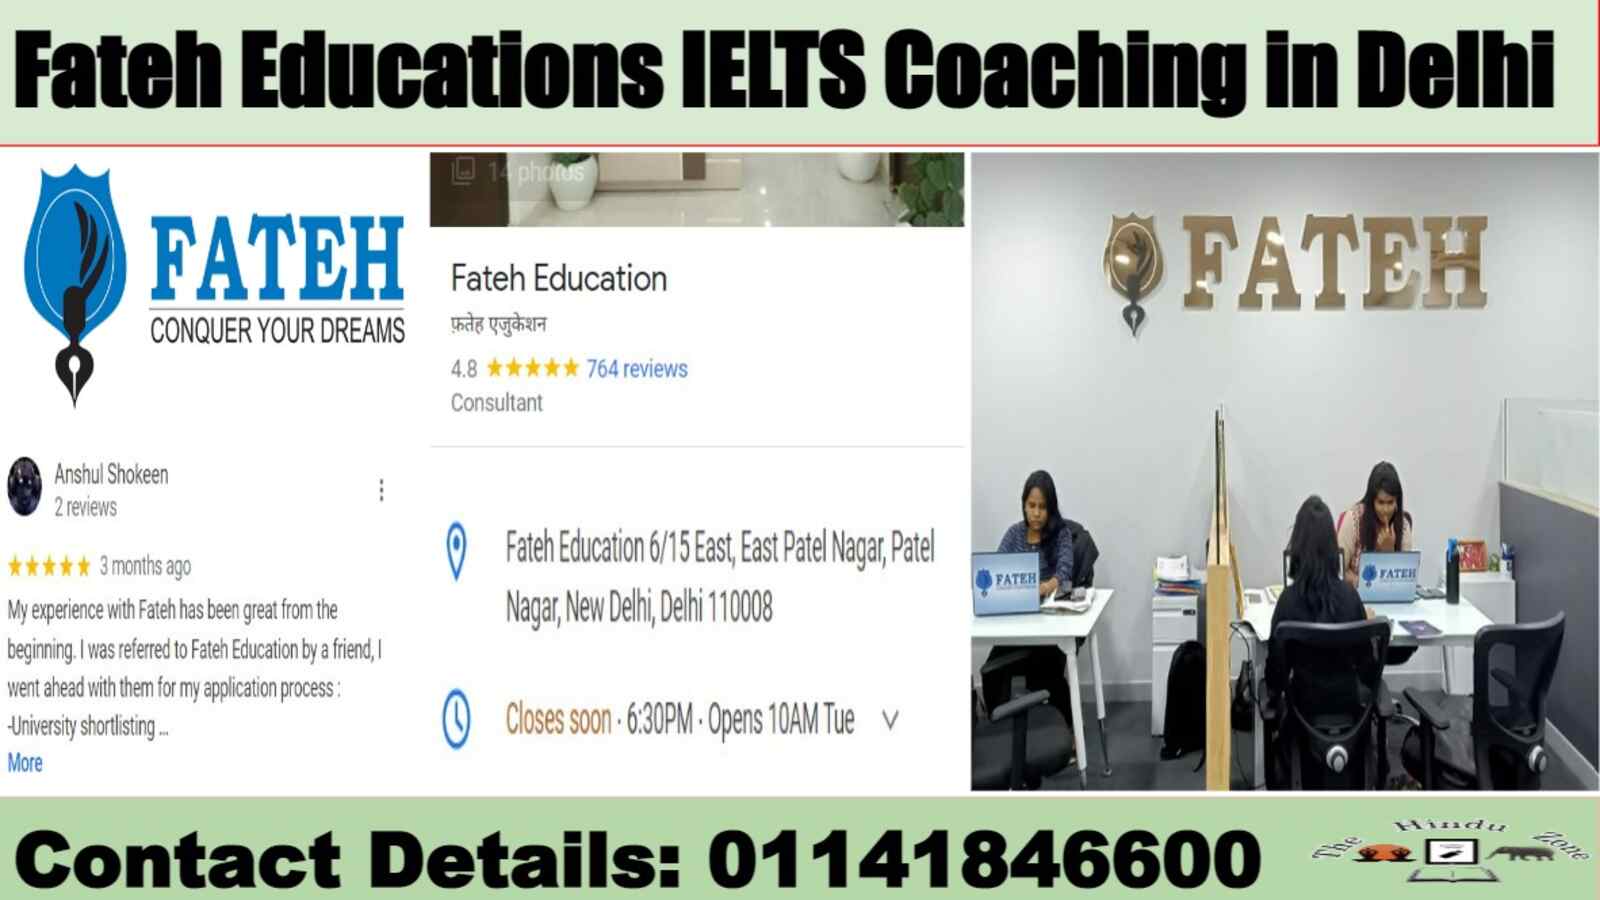 Fateh Education's IELTS Coaching in Delhi